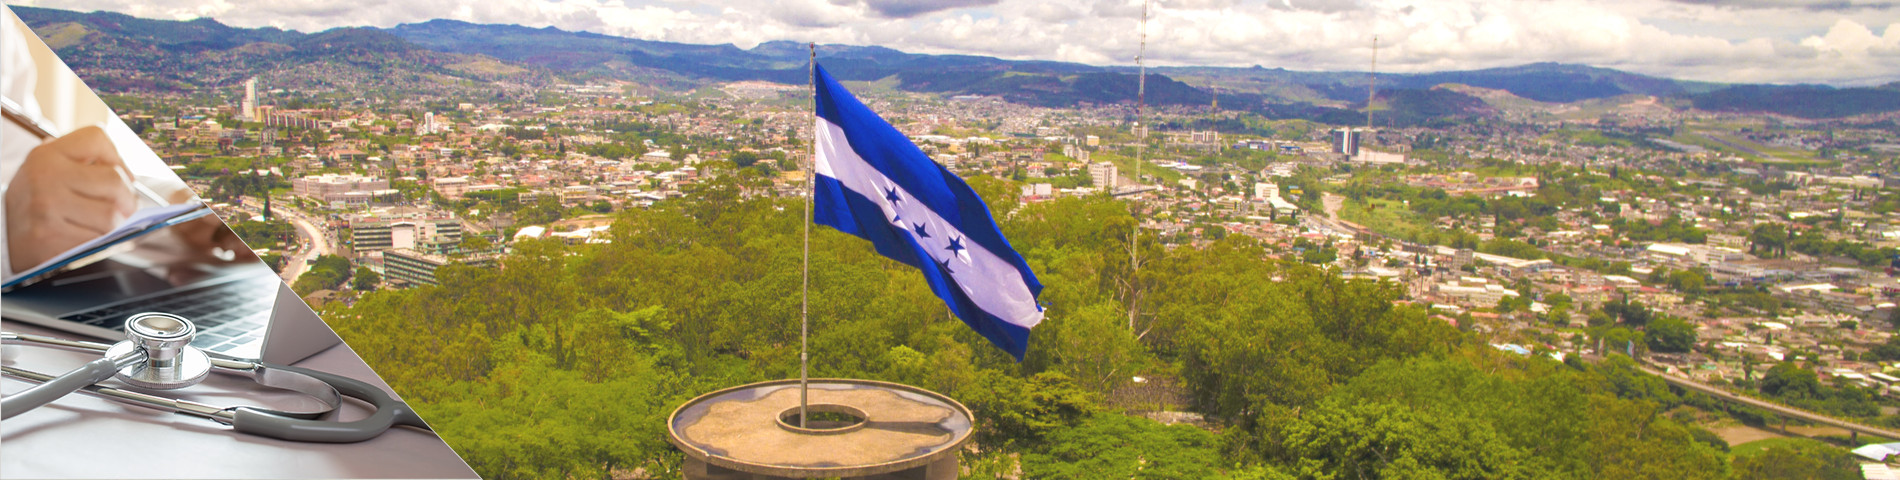 Honduras - Espanja lääkäreille ja sairaanhoitajille